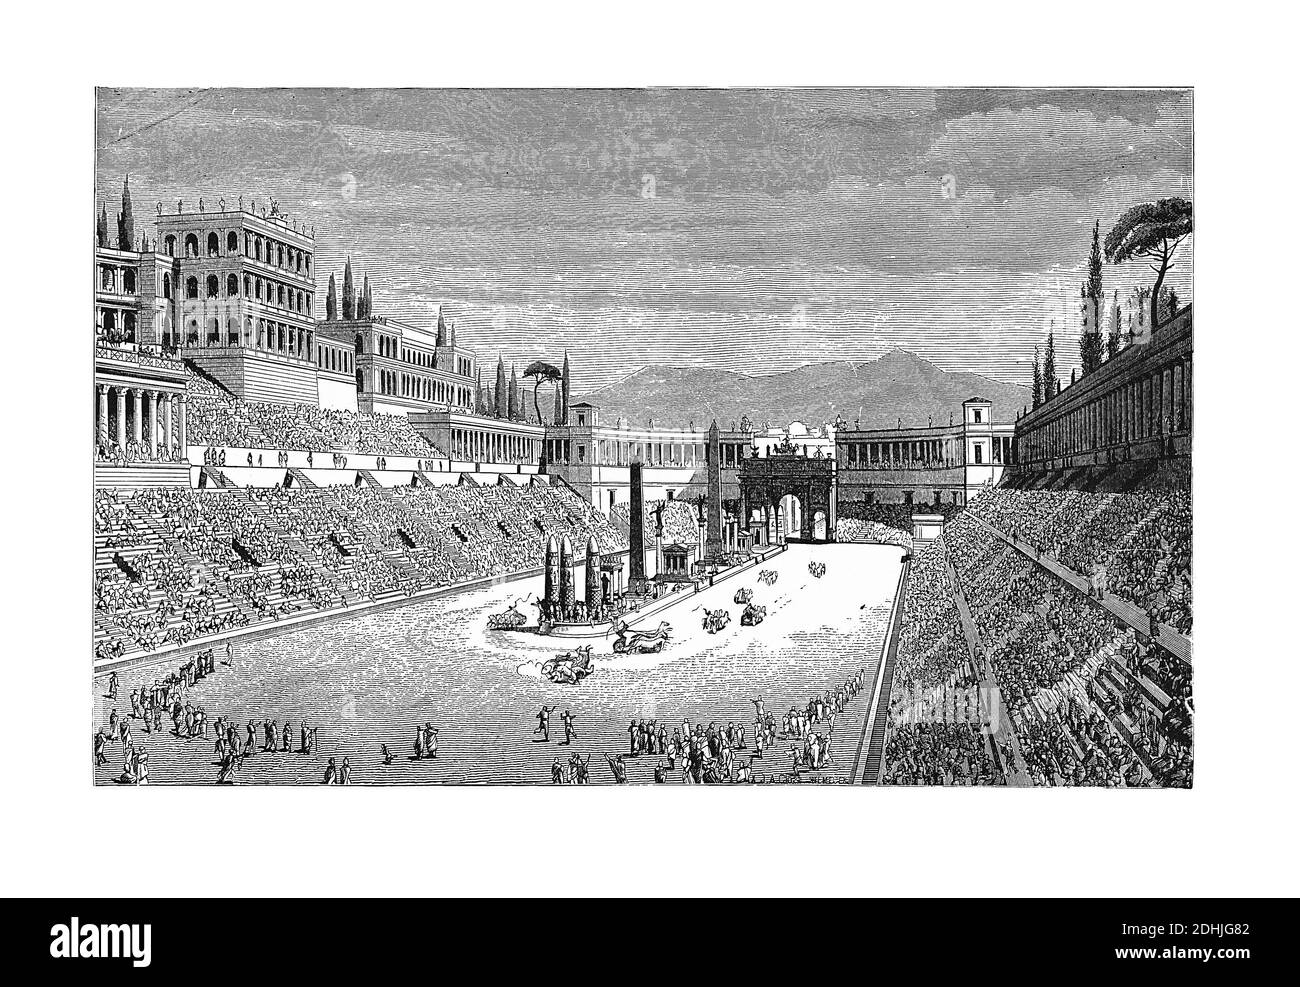 Originale Kunstwerke von Circus Maximus, einer alten römischen Streitwagenrennen Stadion und Masse Veranstaltungsort in Rom, Italien. In einem Picto veröffentlicht. Stockfoto